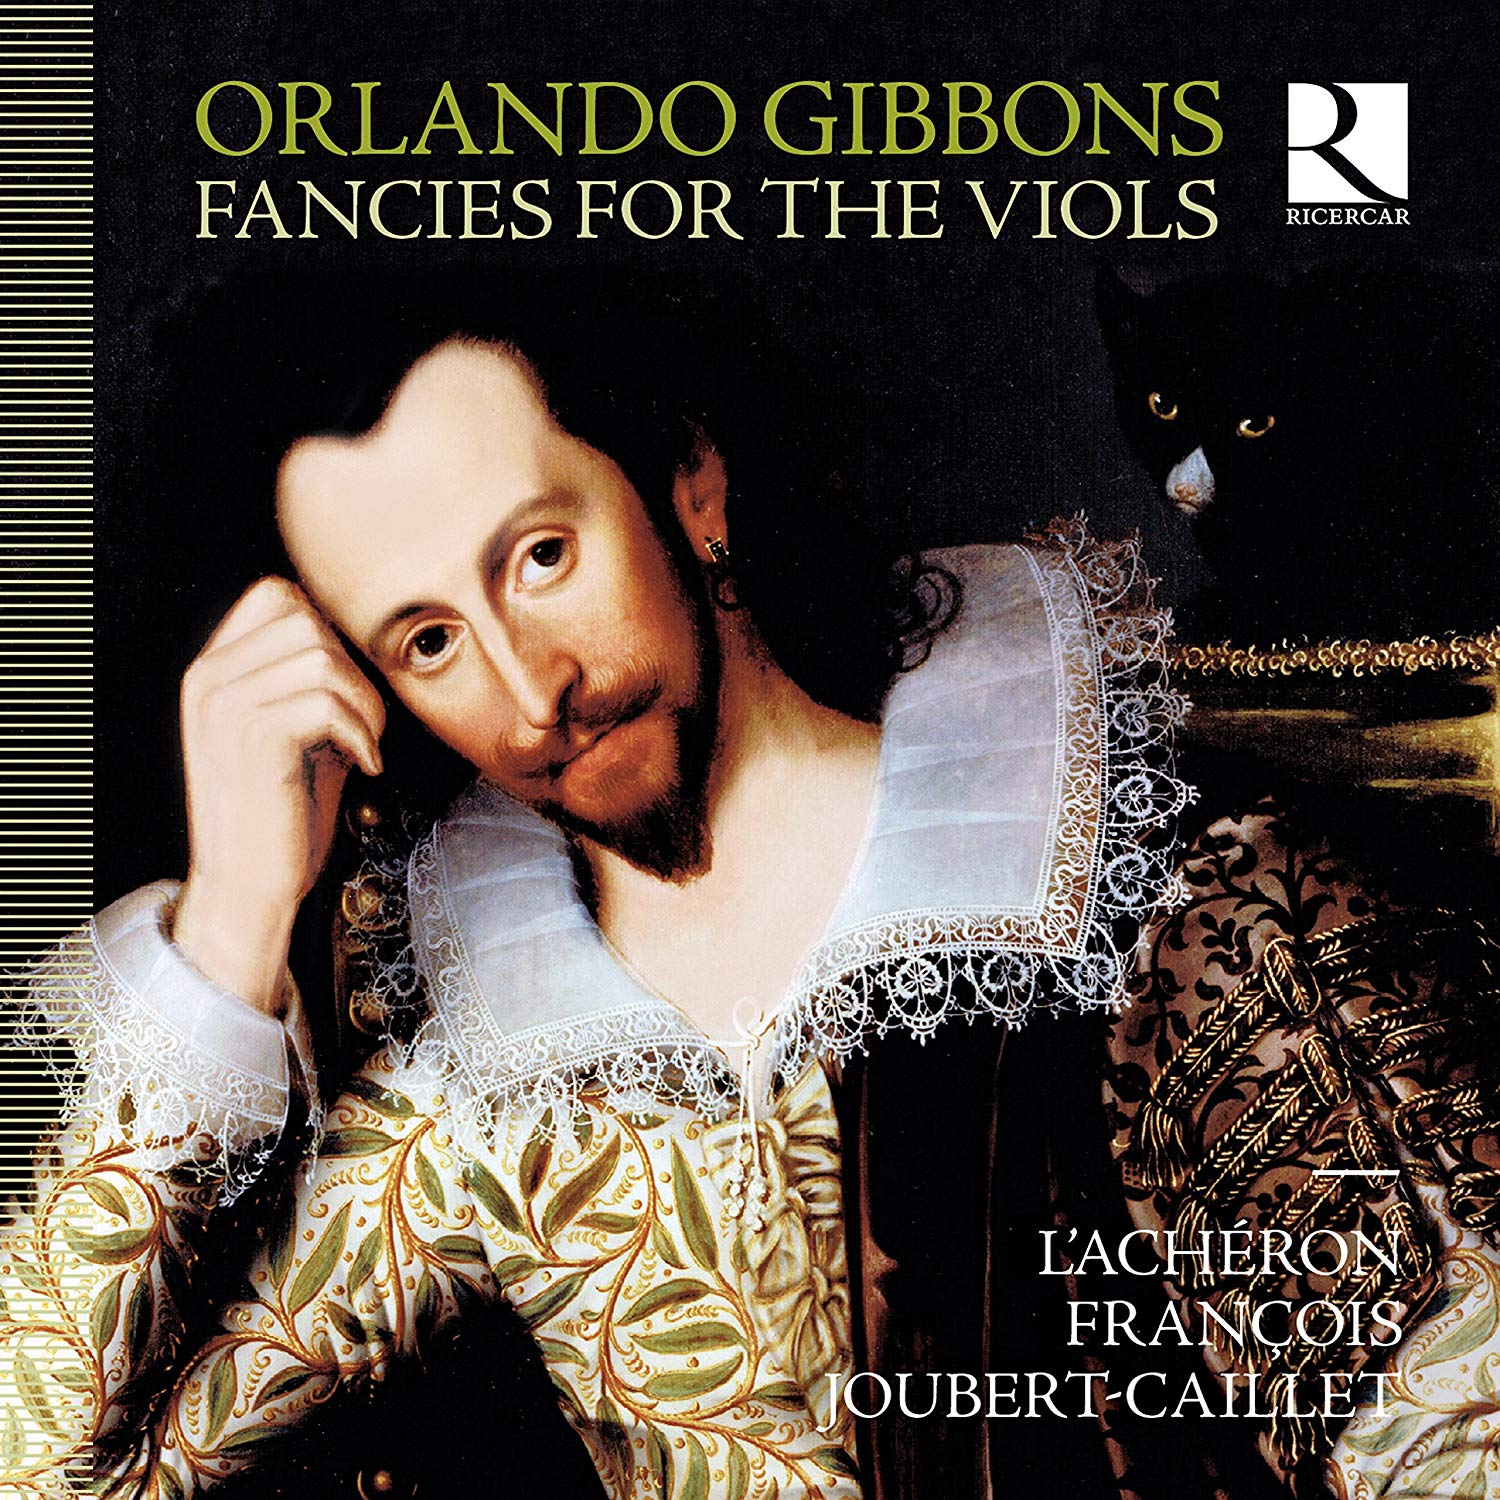 Gibbons - Fancies for the Viols - L'Achéron & François Joubert-Caillet